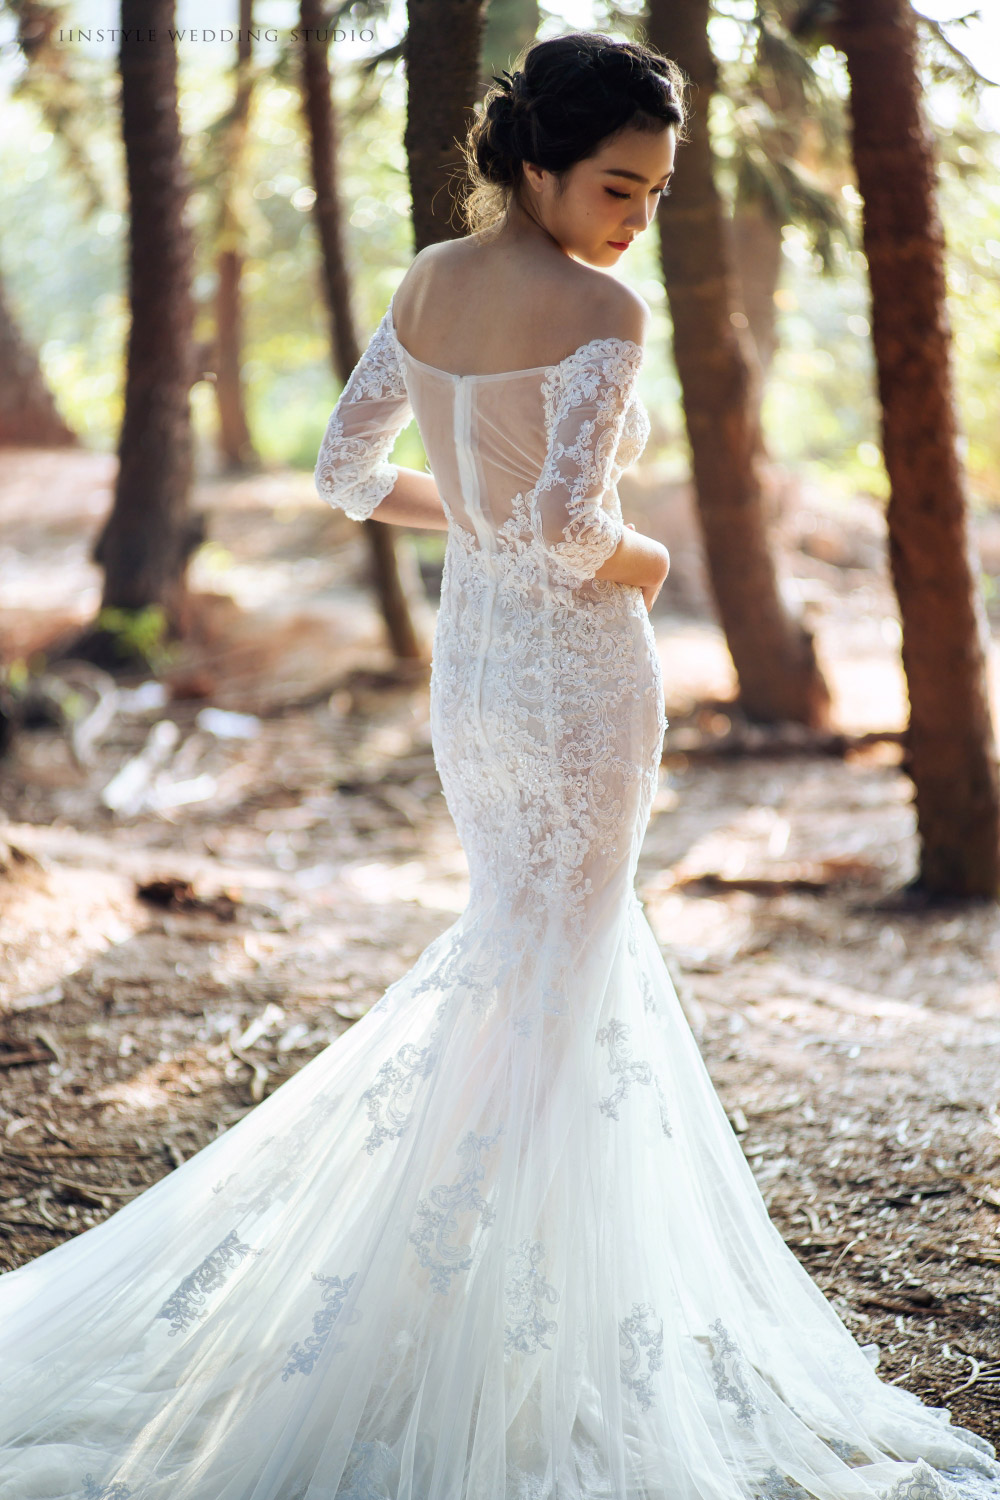 Lovely Wedding Dress